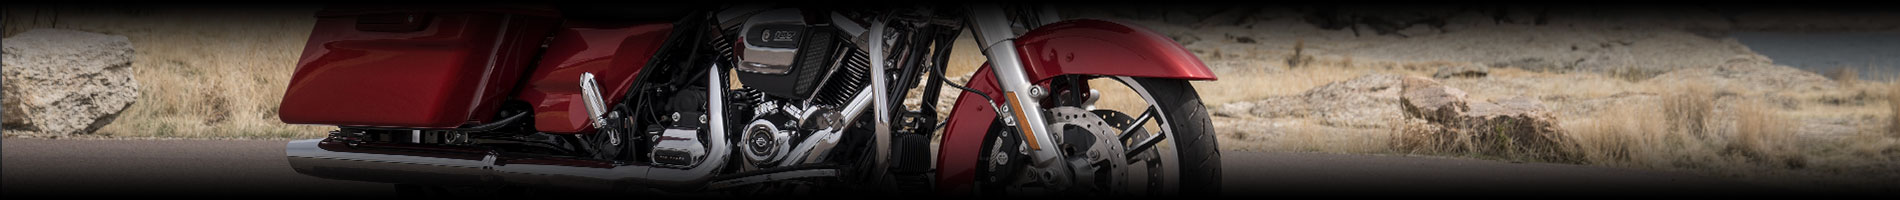 Harley-Davidson Parts & Accessories